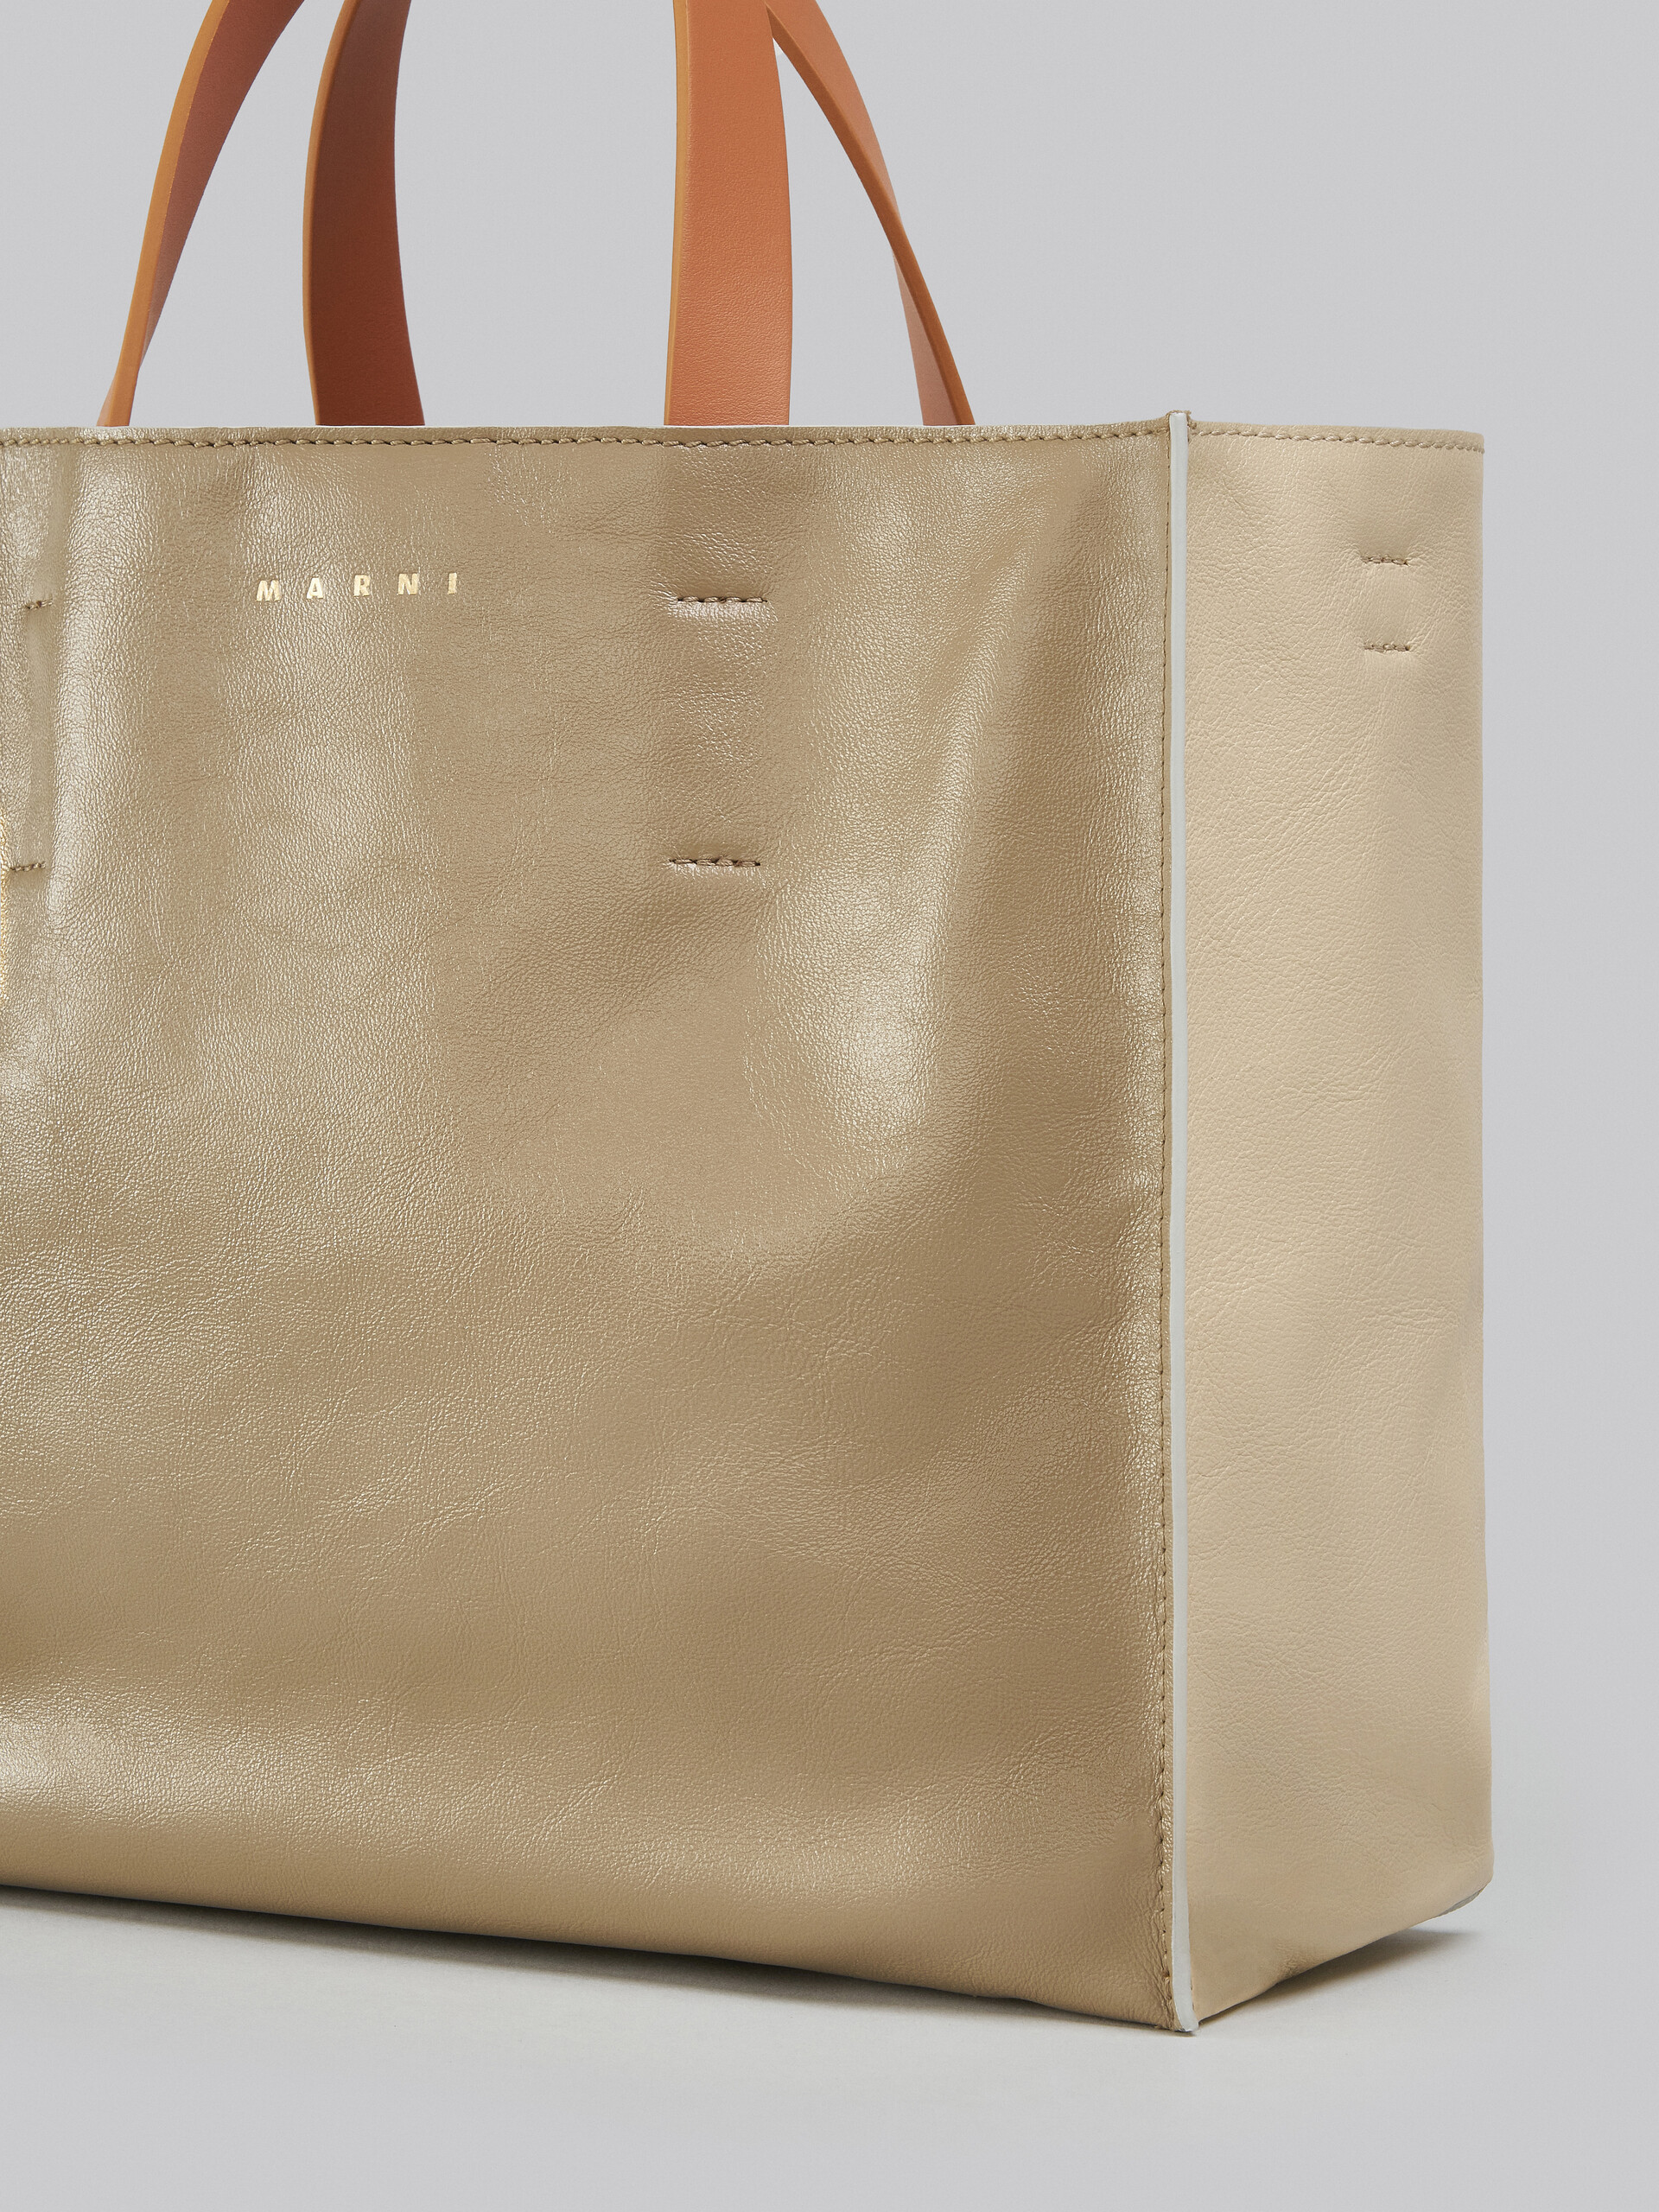 Museo Soft Bag E/W in pelle grigio-verde e beige - Borse shopping - Image 5